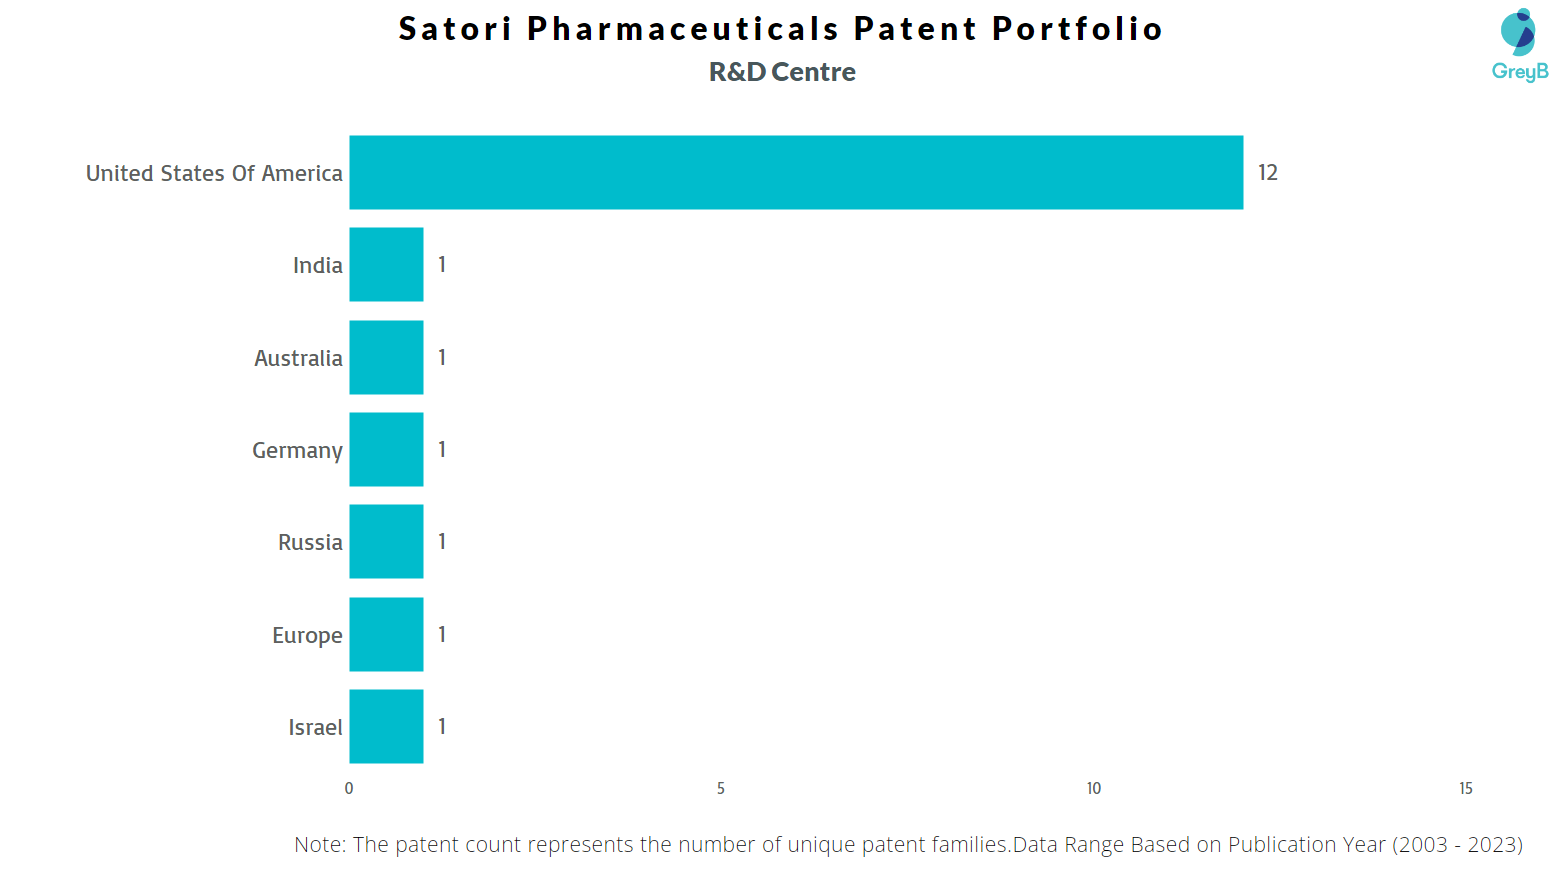 R&D Centers of Satori Pharmaceuticals